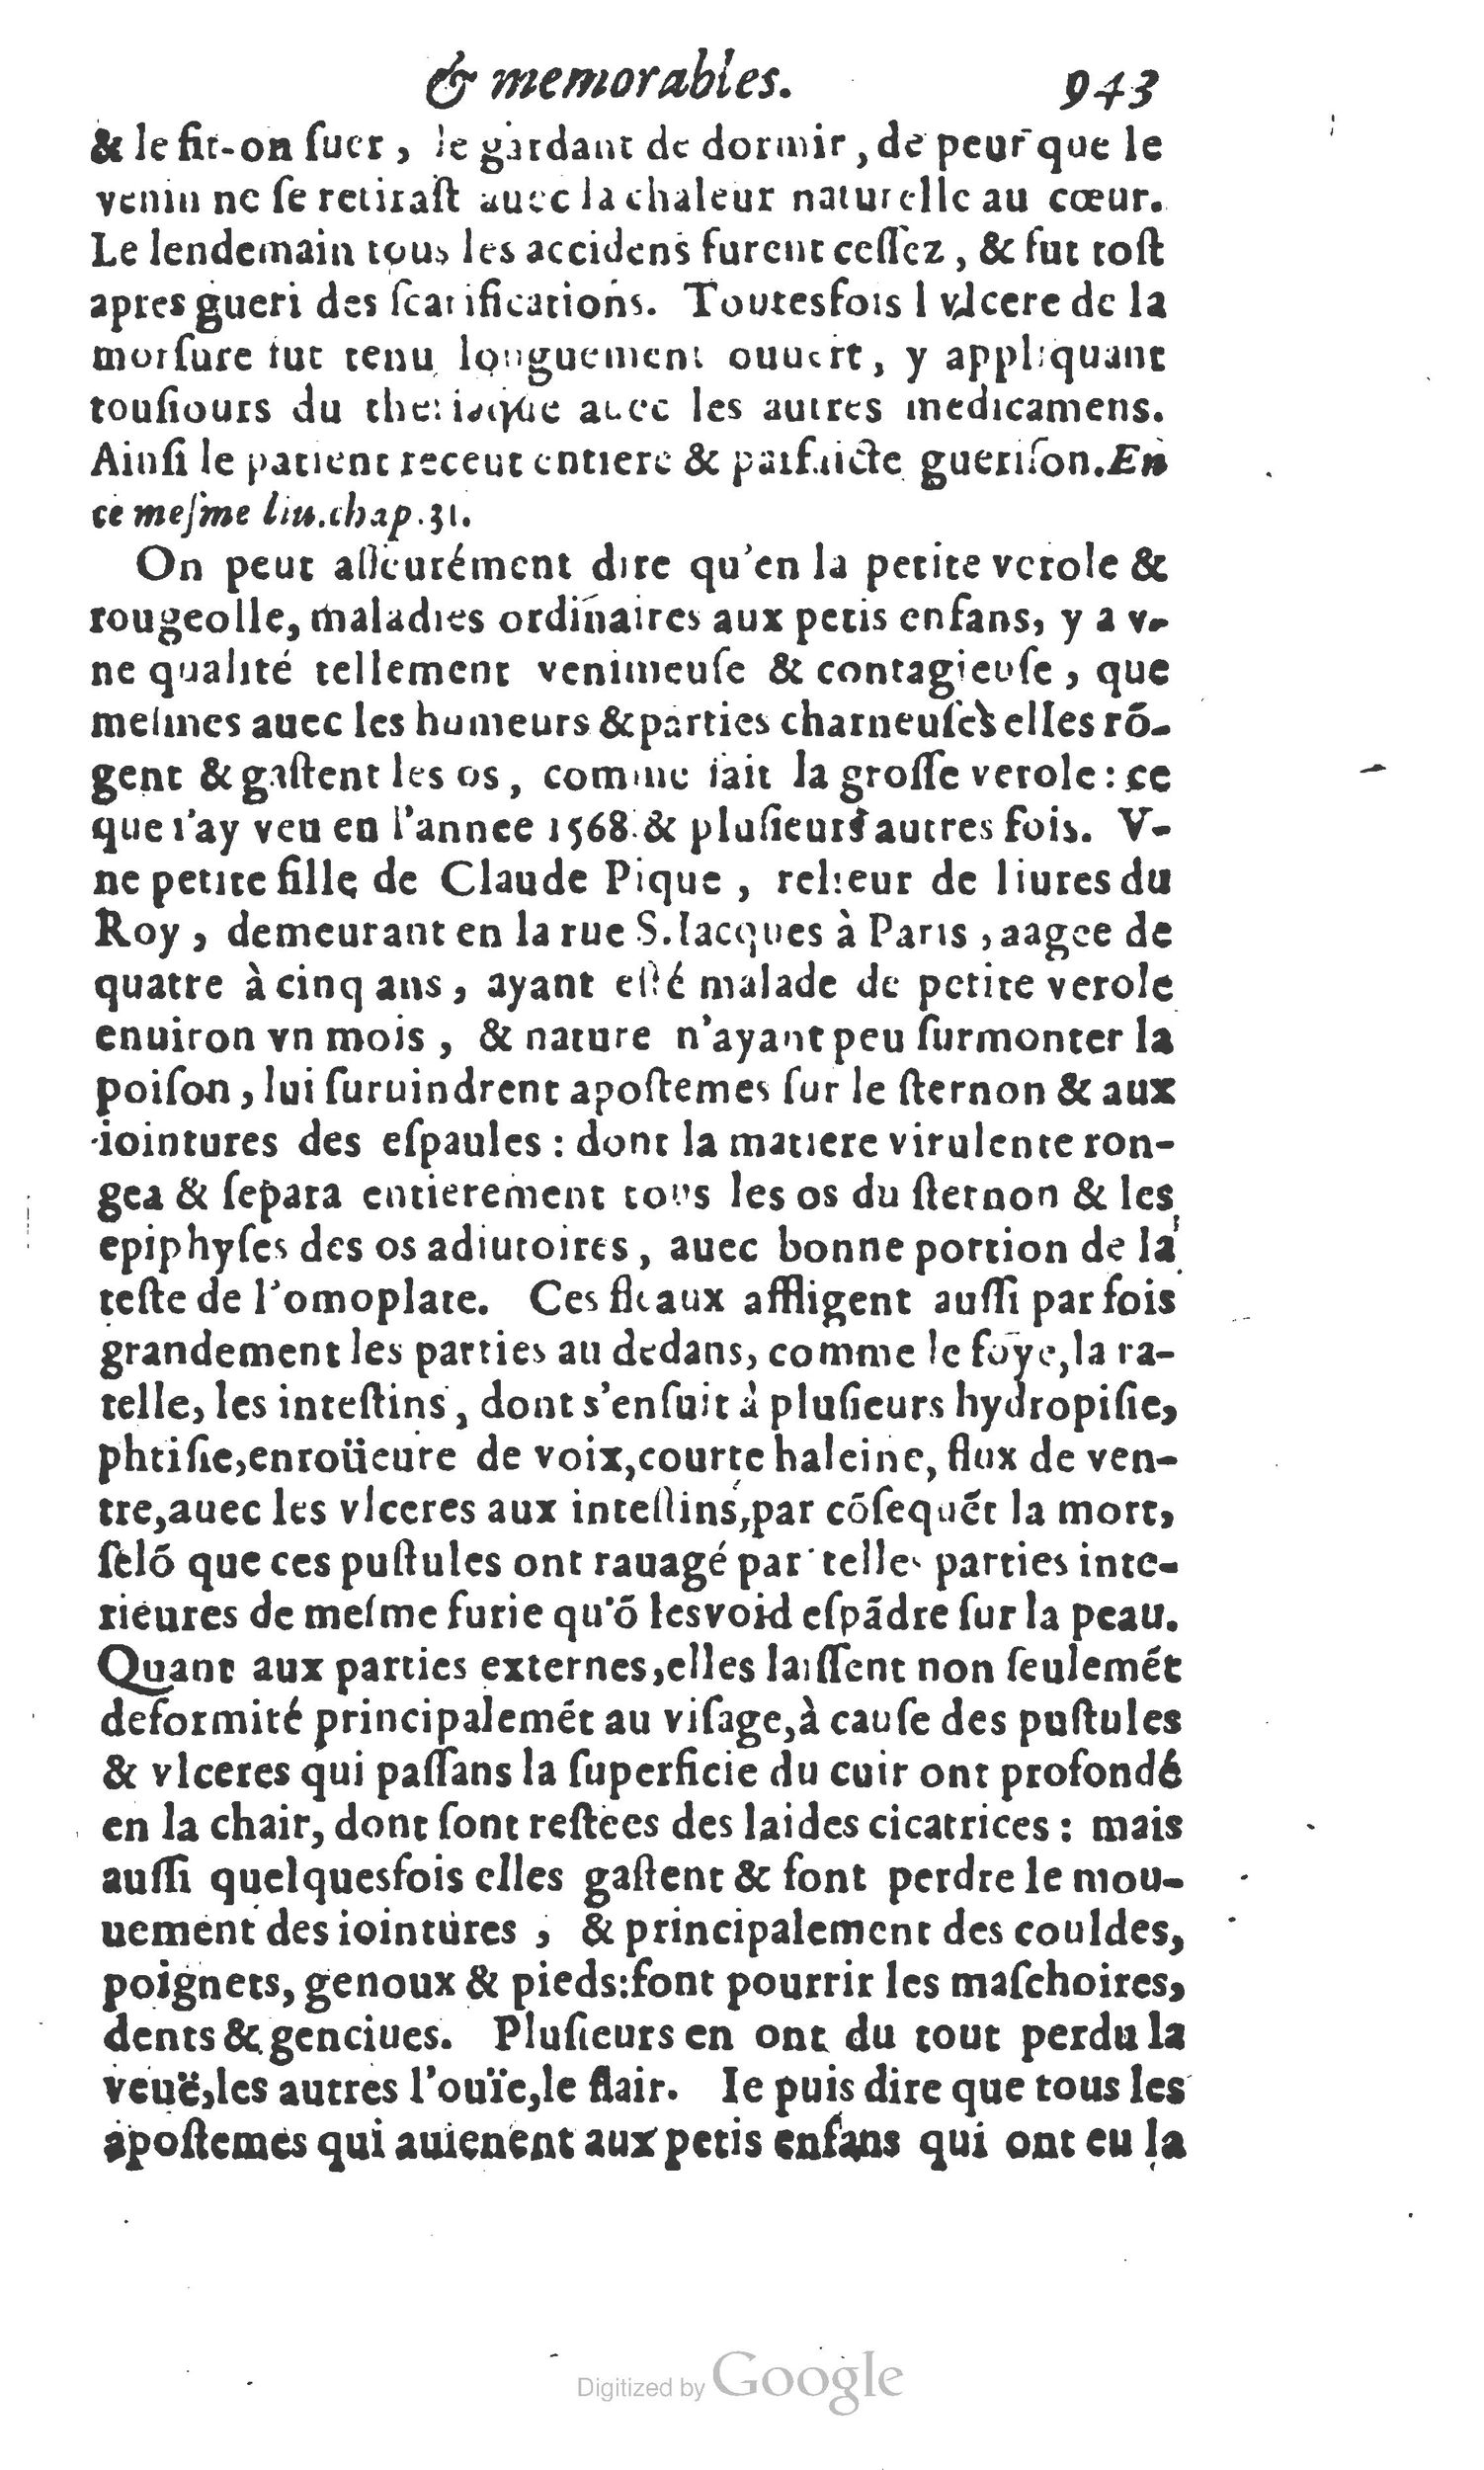 1610 Trésor d’histoires admirables et mémorables de nostre temps Marceau Princeton_Page_0964.jpg